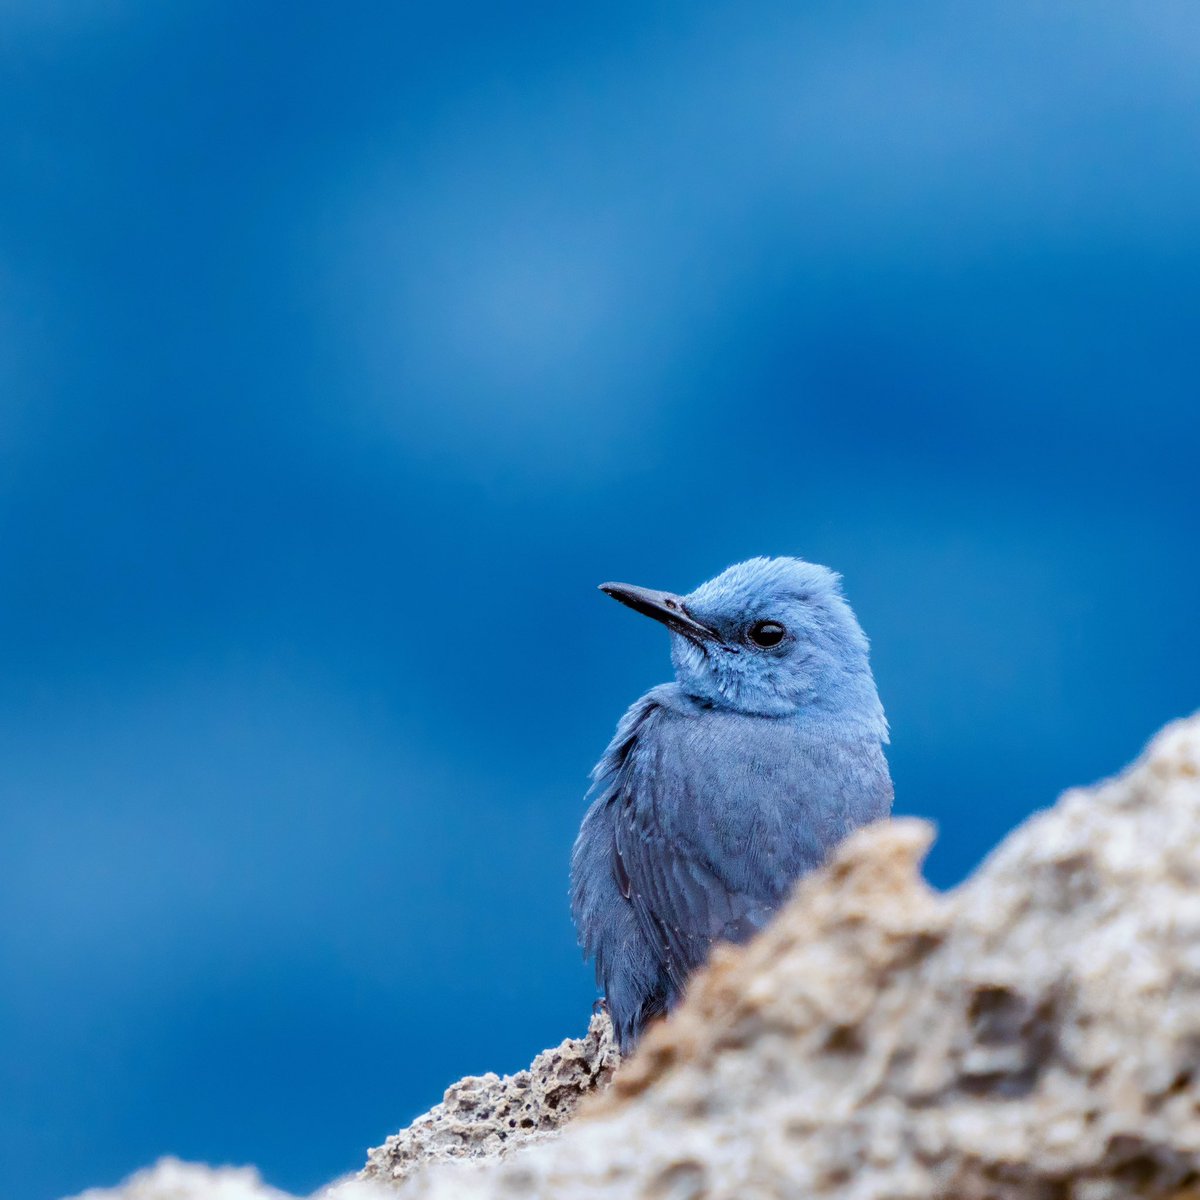 Denizin rengi, denizinkuşu…

GÖKARDIÇ
Blue-Rock Thrush 

#trakus #birding_photography #birdingantalya #nut_about_birds #kuş #bird #birdsonearth #1x  #bluerockthrush #bluebird #bluebirds